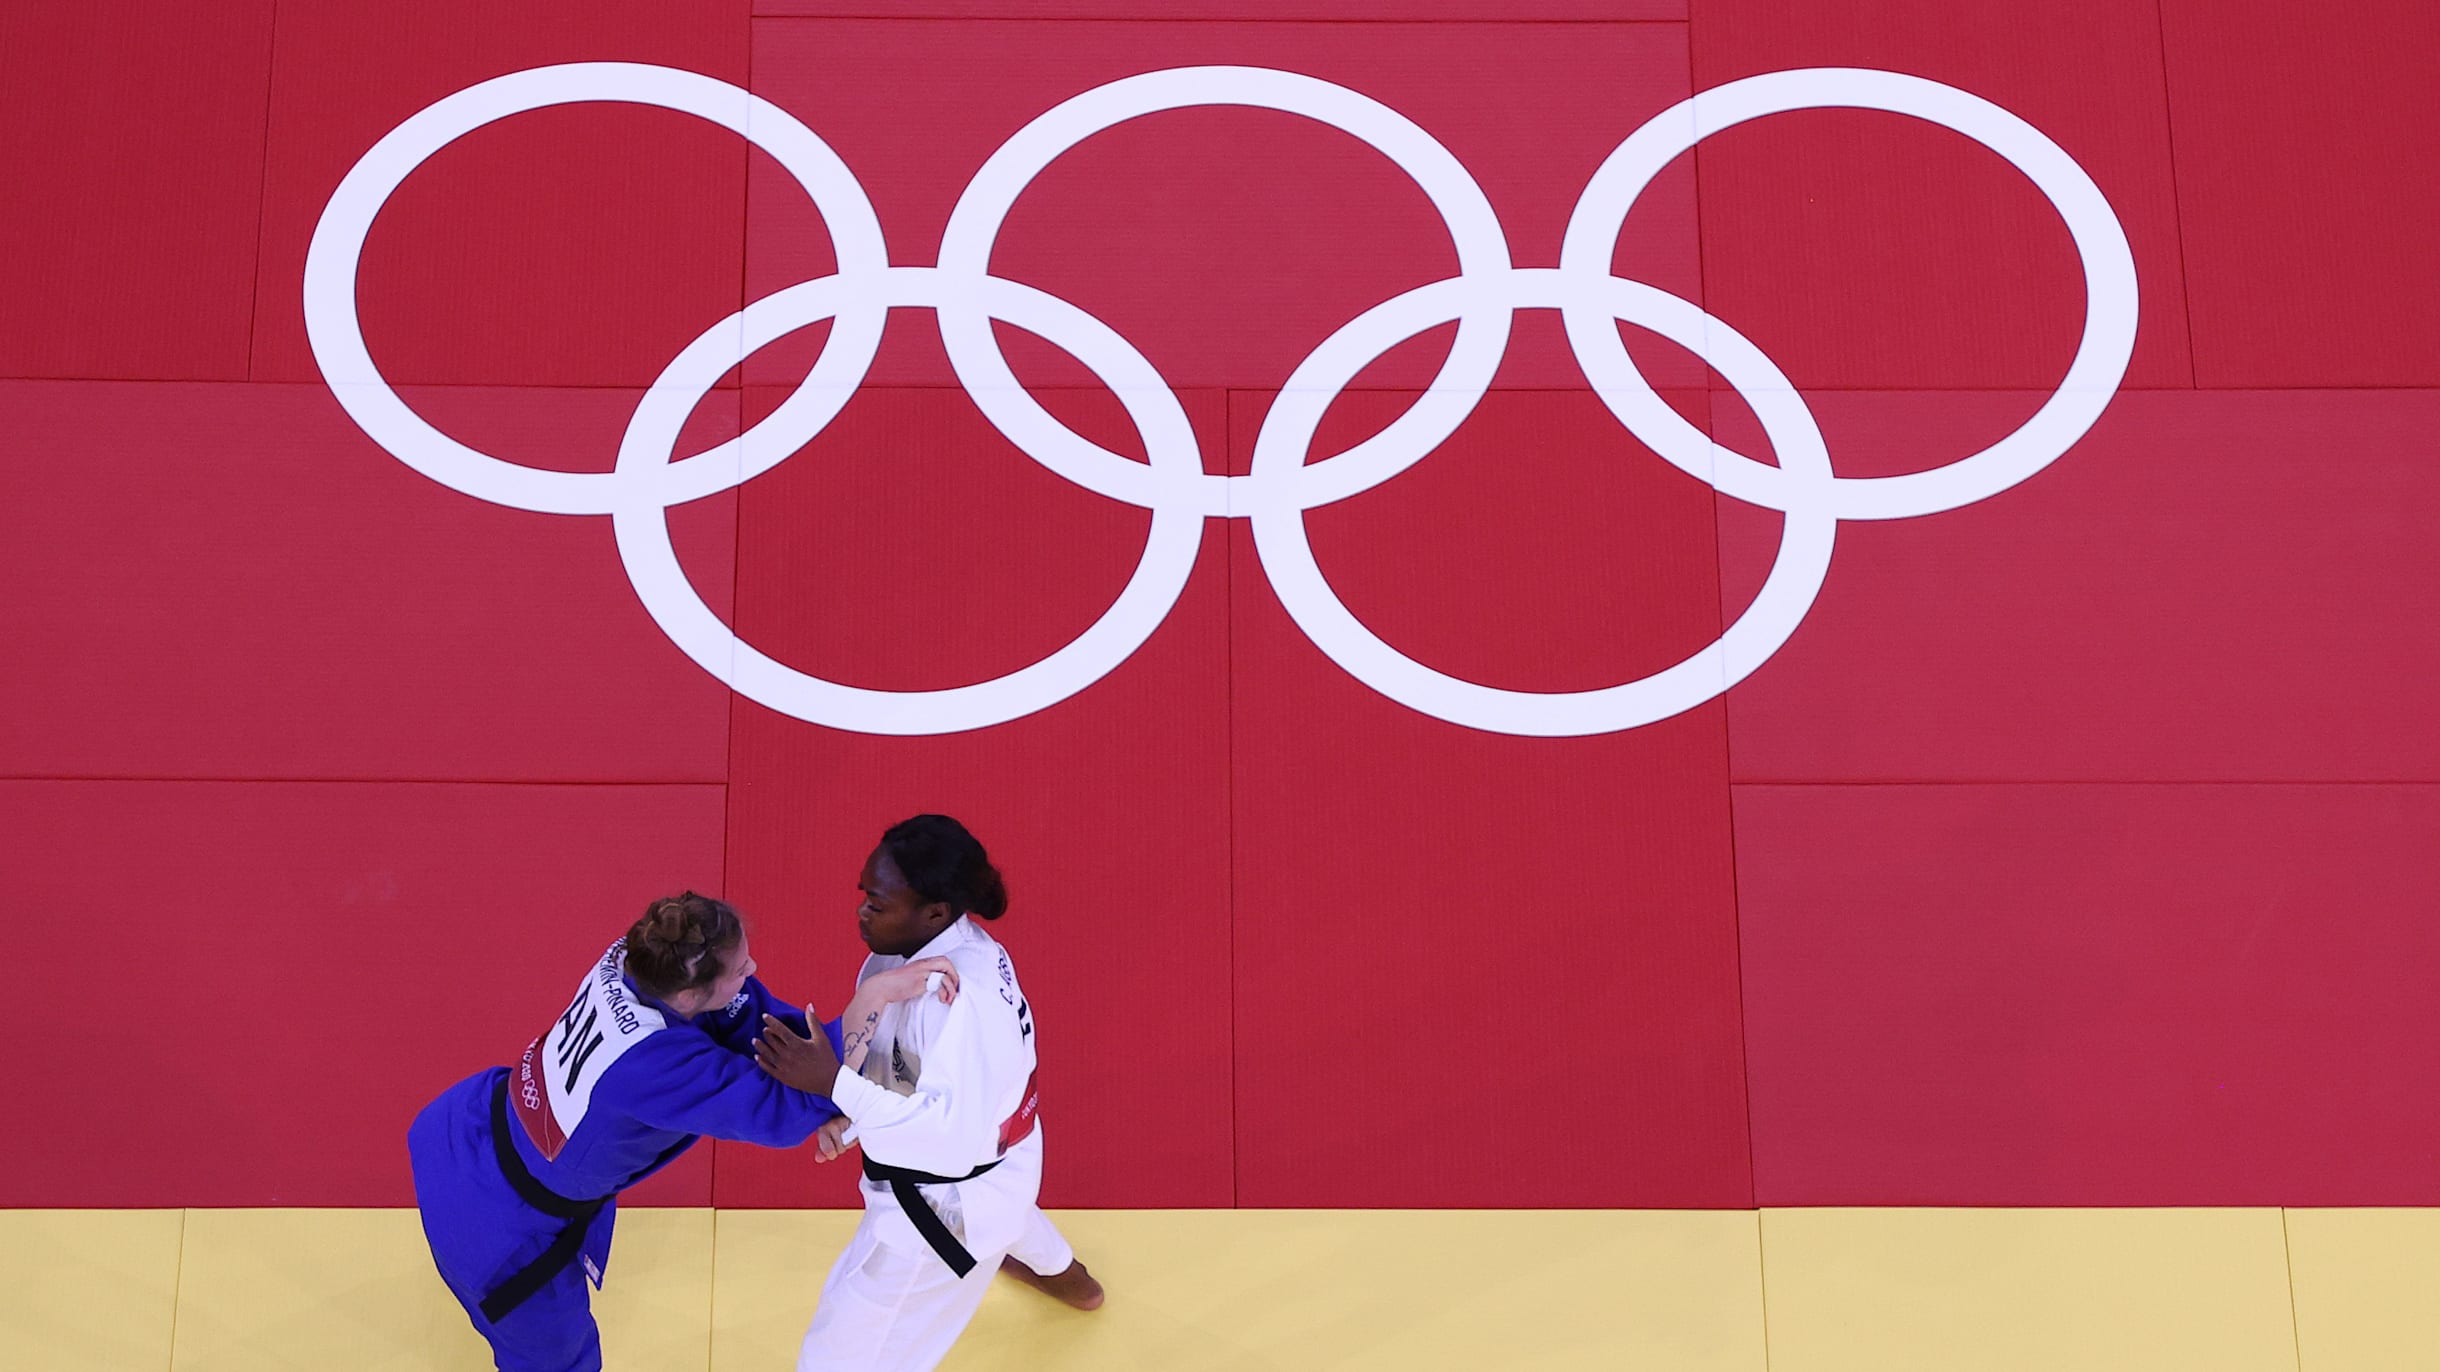 Der Weg nach Paris 2024 Das Qualifikationssystem für den Judo-Wettbewerb